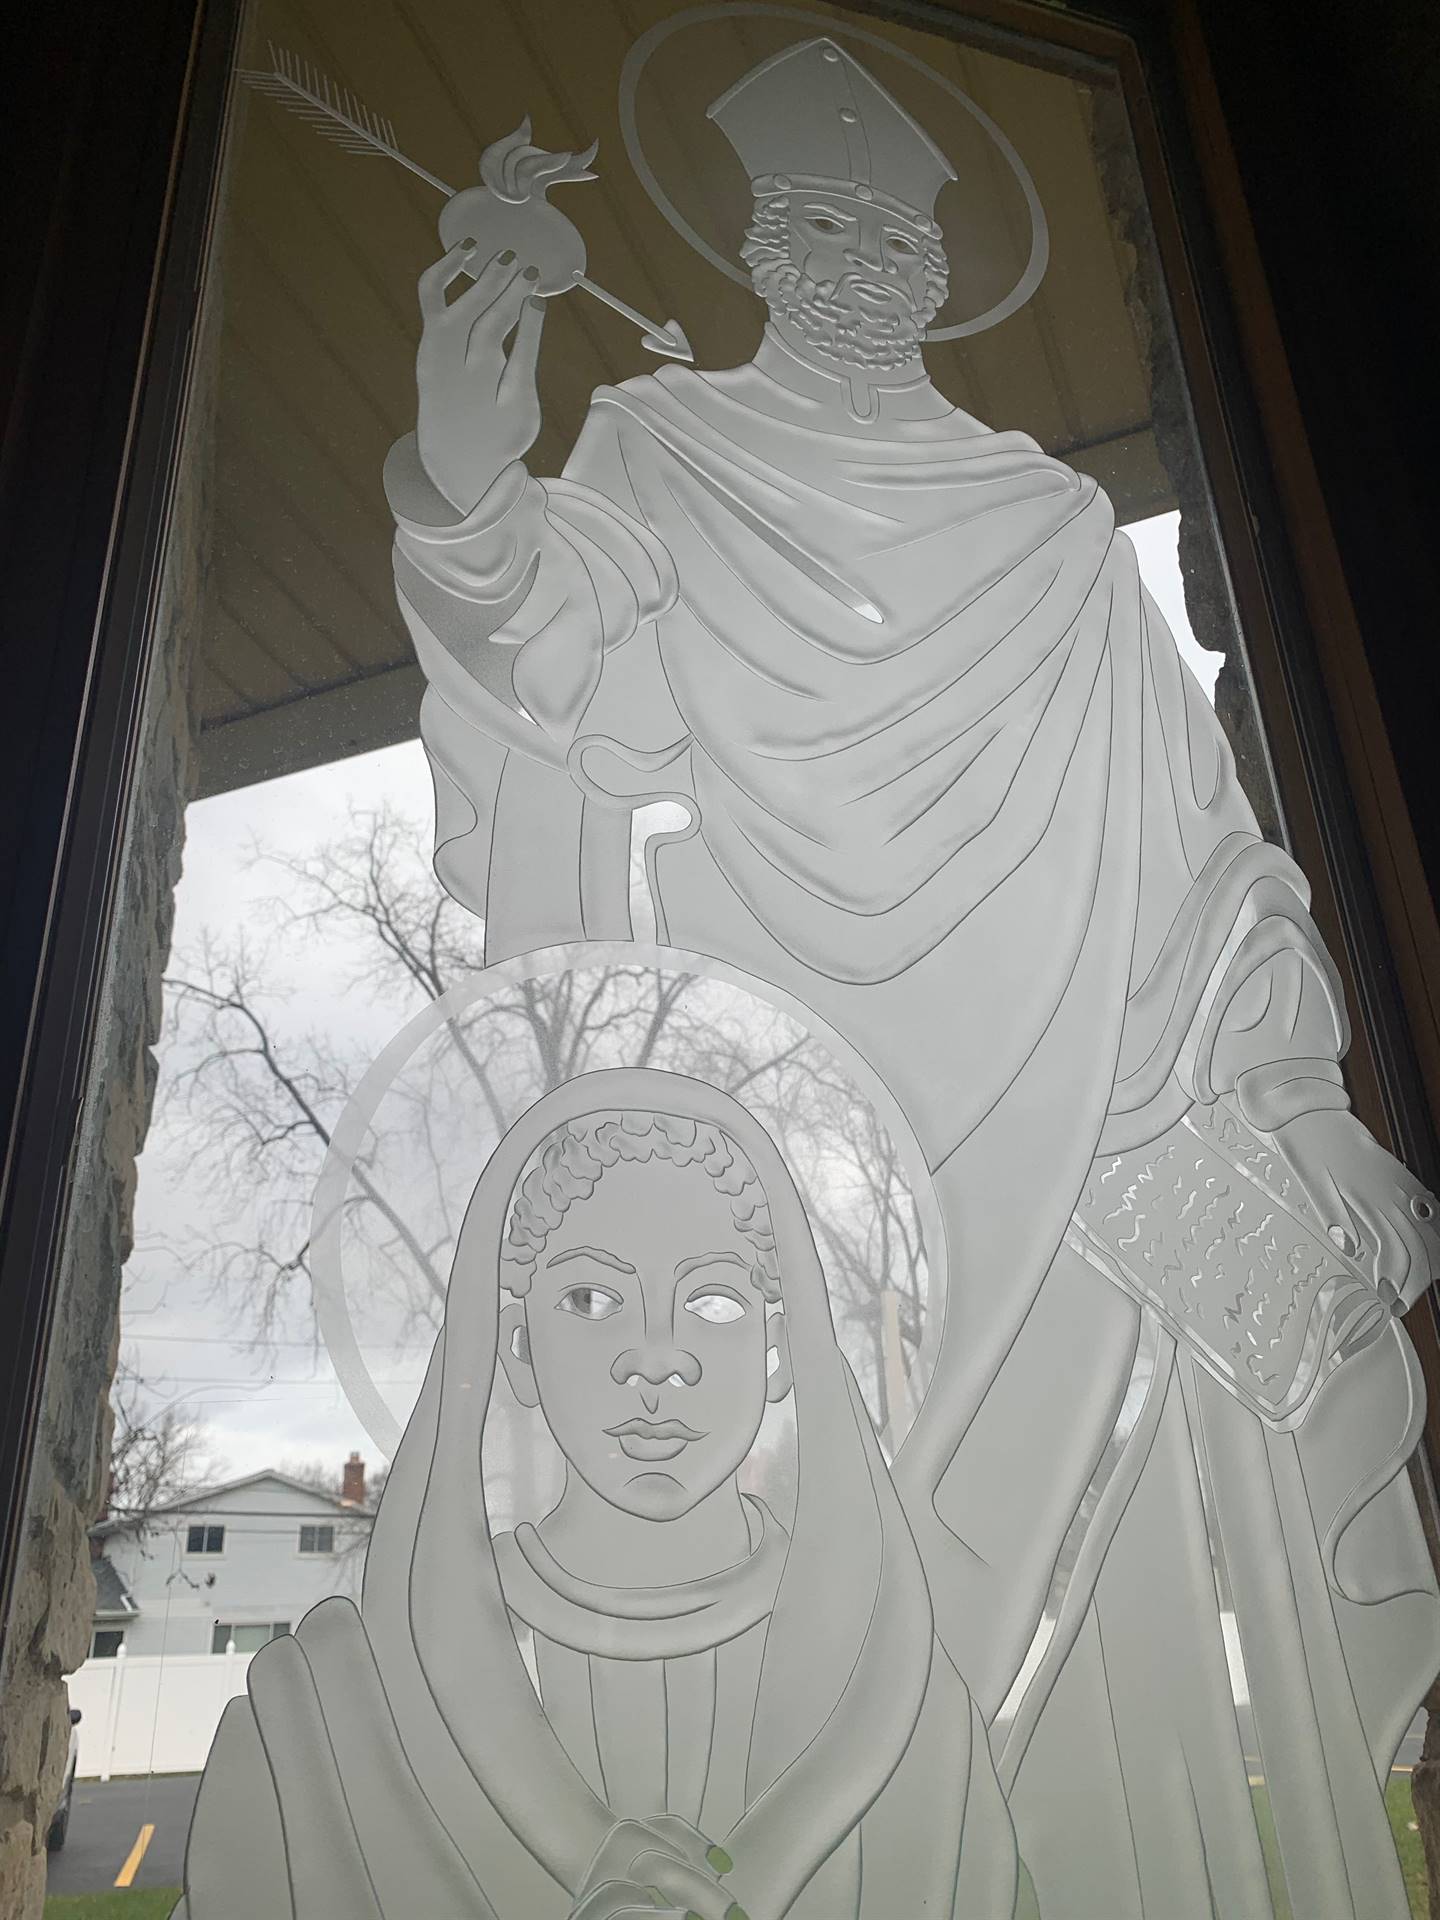 etched windows of saints